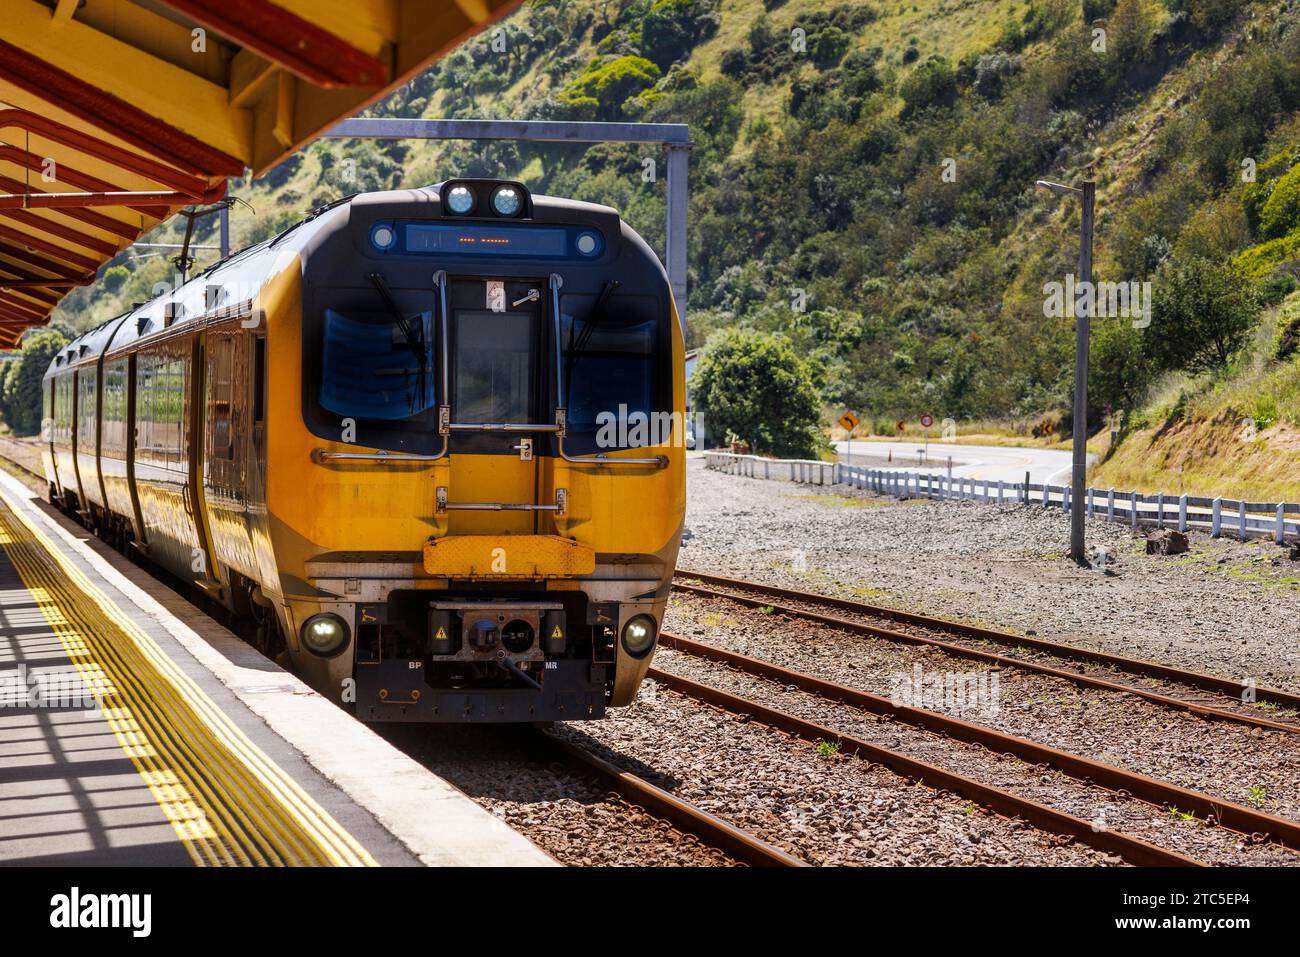 Ein Bild eines Eisenbahnzugs, der in einen Bahnhof in Paekakriki fährt. Paekakariki ist eine kleine Küstenstadt nördlich von Wellington Neuseeland Stockfoto